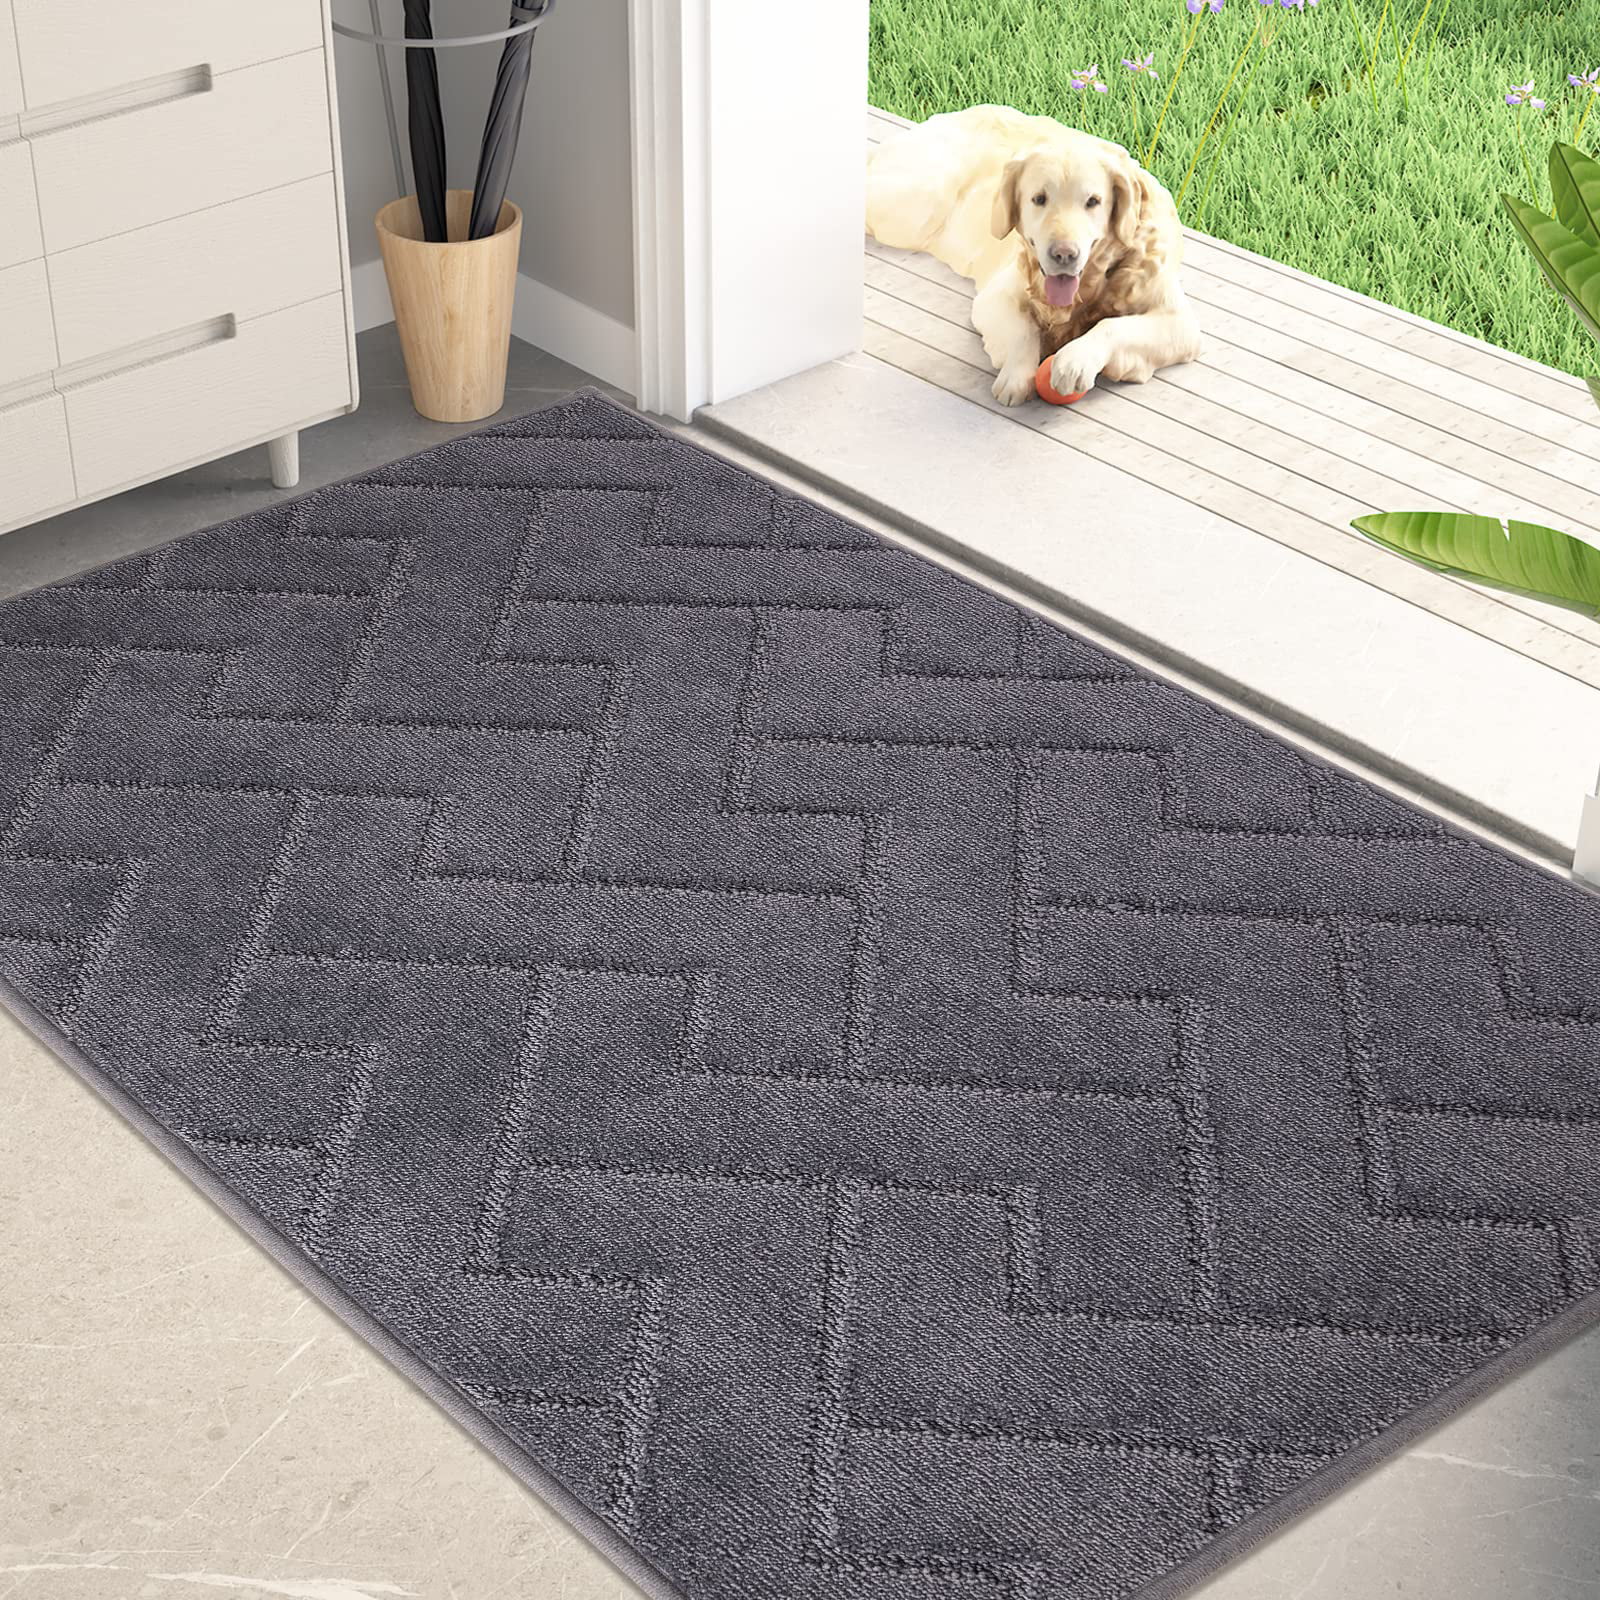 Vaukki Indoor Doormat, Non Slip Absorbent Mud Trapper Low-Profile Inside  Floor Mats, Soft Machine Washable Large Rugs Door Carpet for Entryway